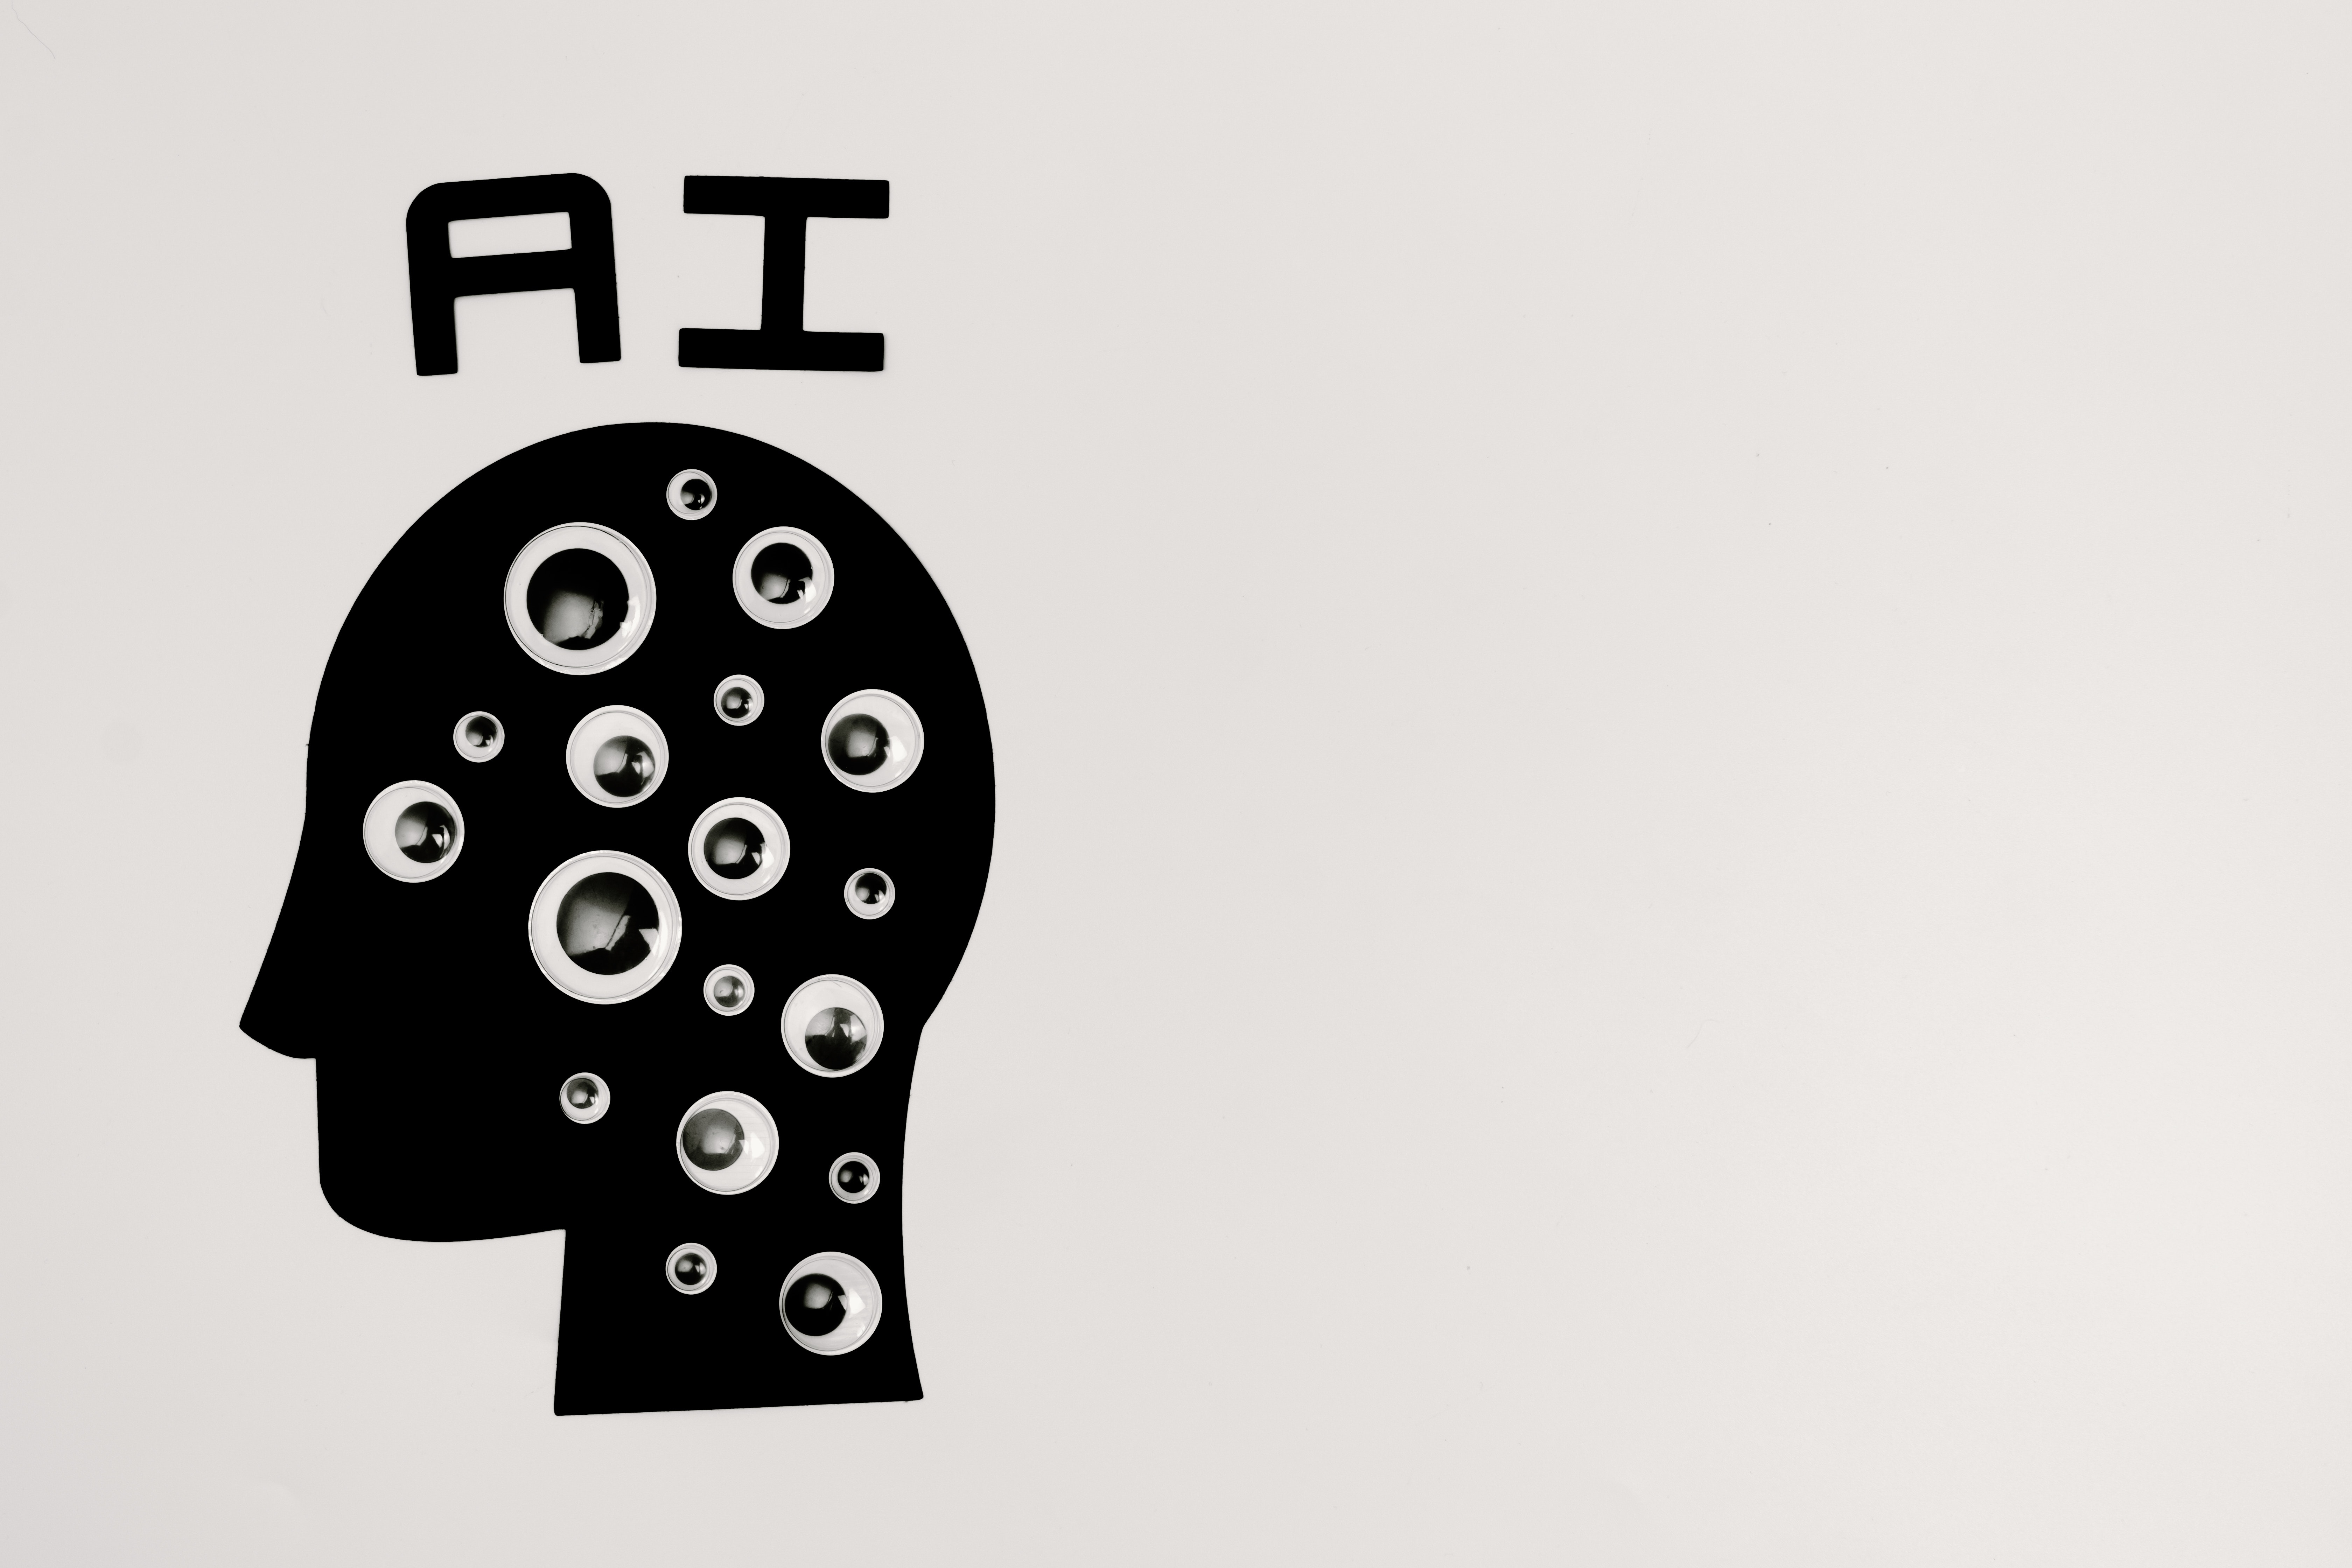 AI Head by Tara Winstead on Pexels